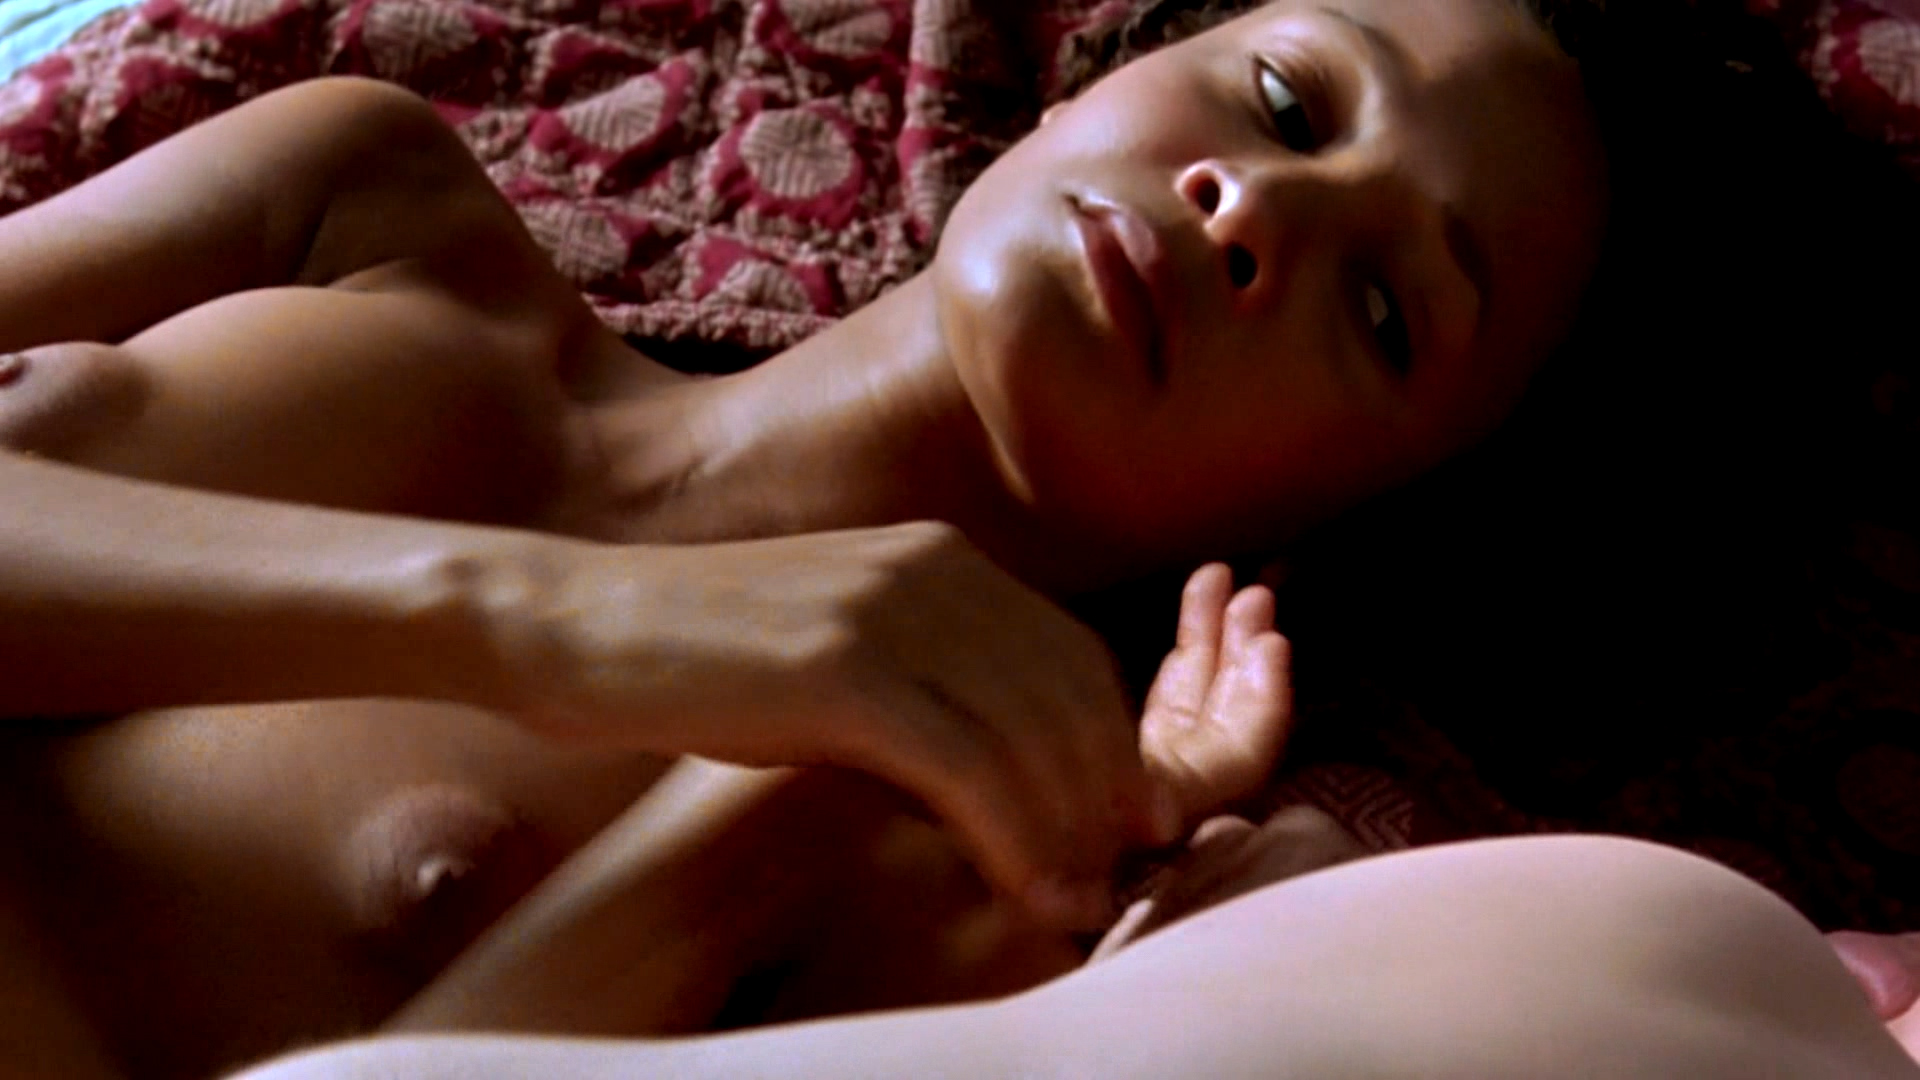 Thandie newton topless